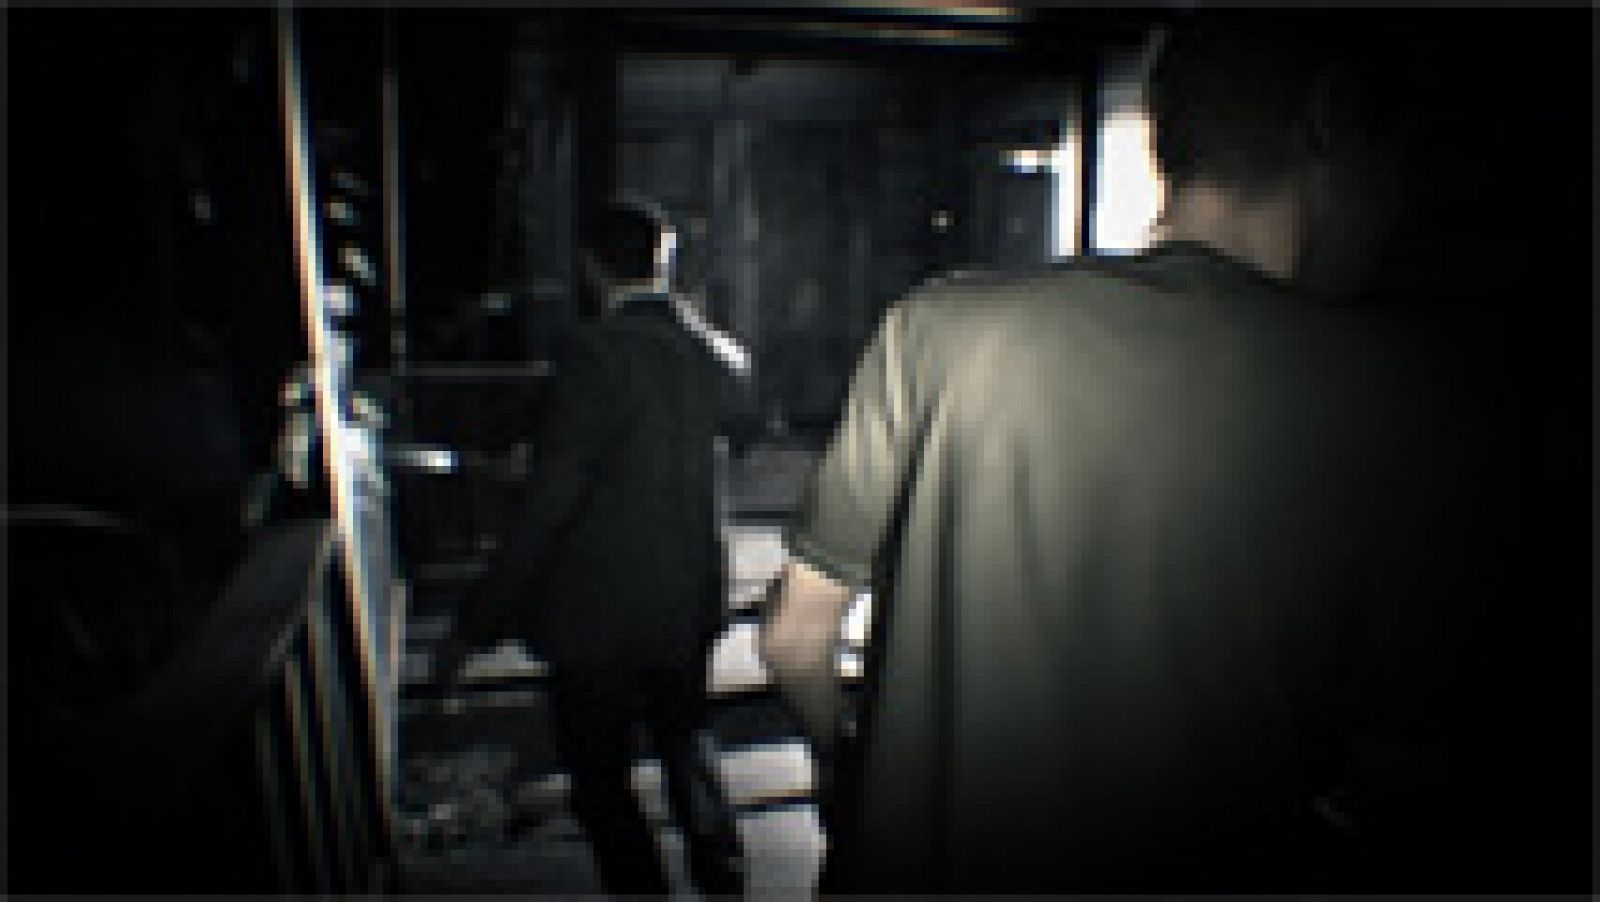 Nuevo trailer de Resident Evil 7: Biohazard. El mítico videojuego del 'survival horror' continuará la saga, esta vez para el recién estrenado casco de realidad virtual de PlayStation, y saldrá a la venta el próximo 24 de enero de 2017.